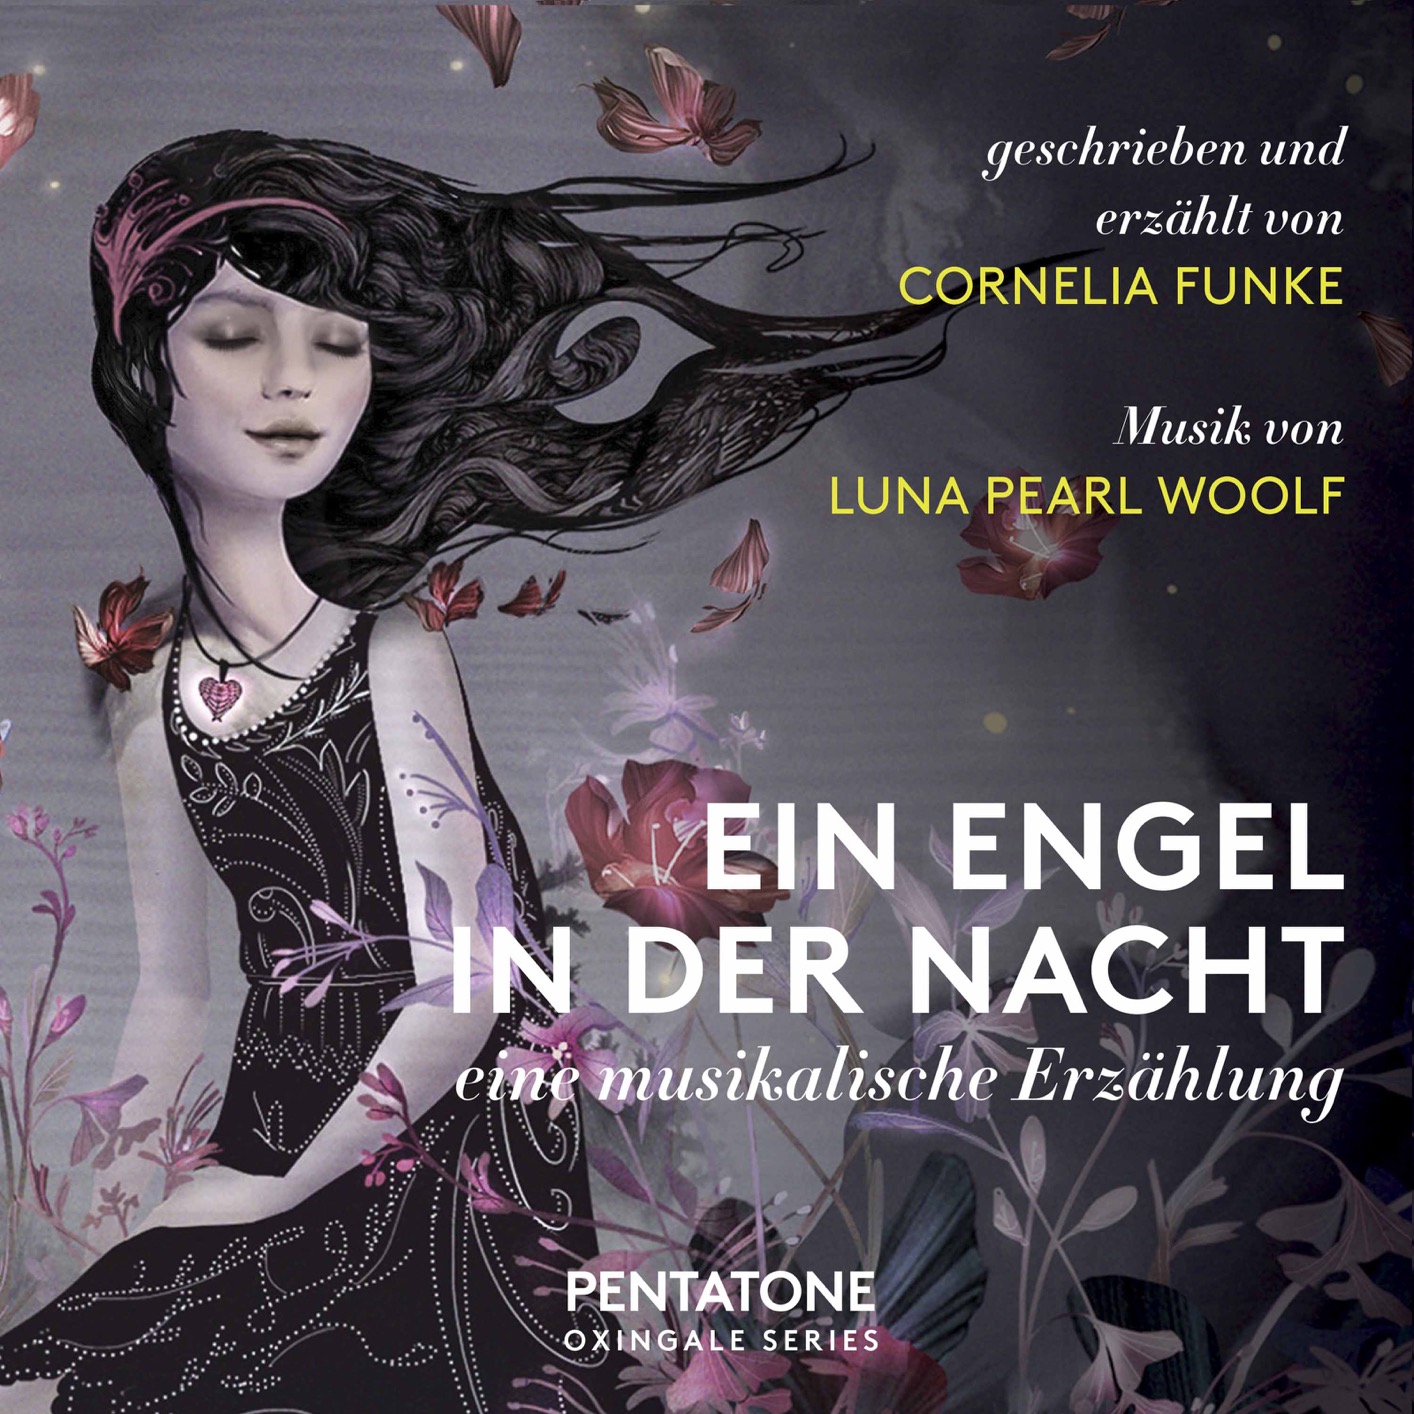 Cornelia Funke, Matt Haimovitz & Uccello - Ein Engel in der Nacht: Eine musikalische Erzahlung (2019) [FLAC 24bit/96kHz]